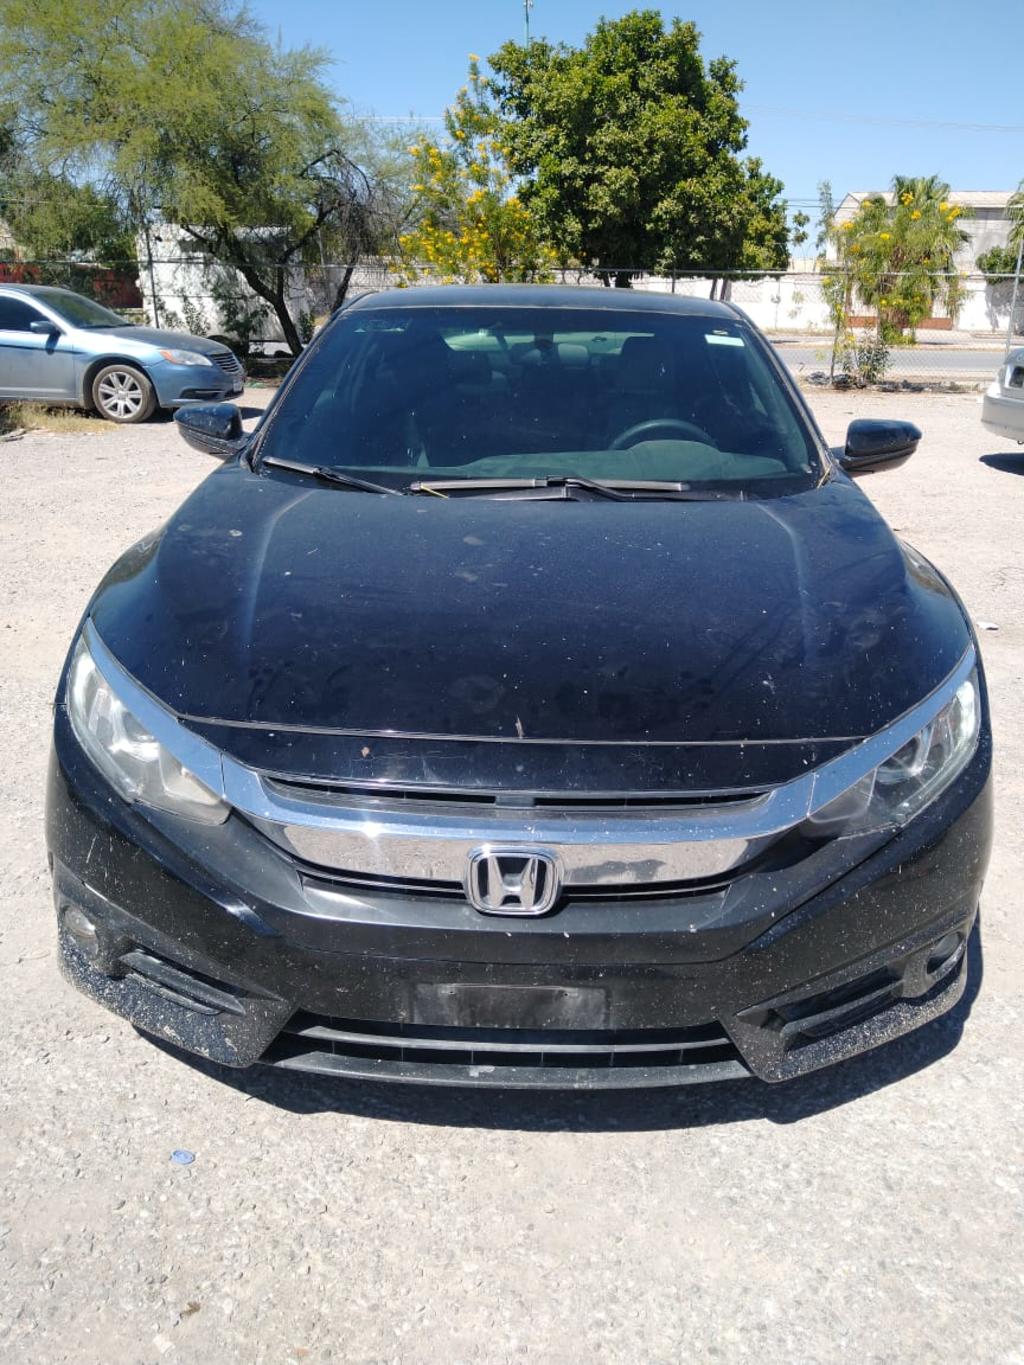 Asimismo, los agentes recuperaron un vehículo de la marca Honda, línea Civic, modelo 2016, en color negro, abandonado en calles de la colonia División del Norte, el cual cuenta con reporte de robo en el presente año 2020, en el Estado de México. 
